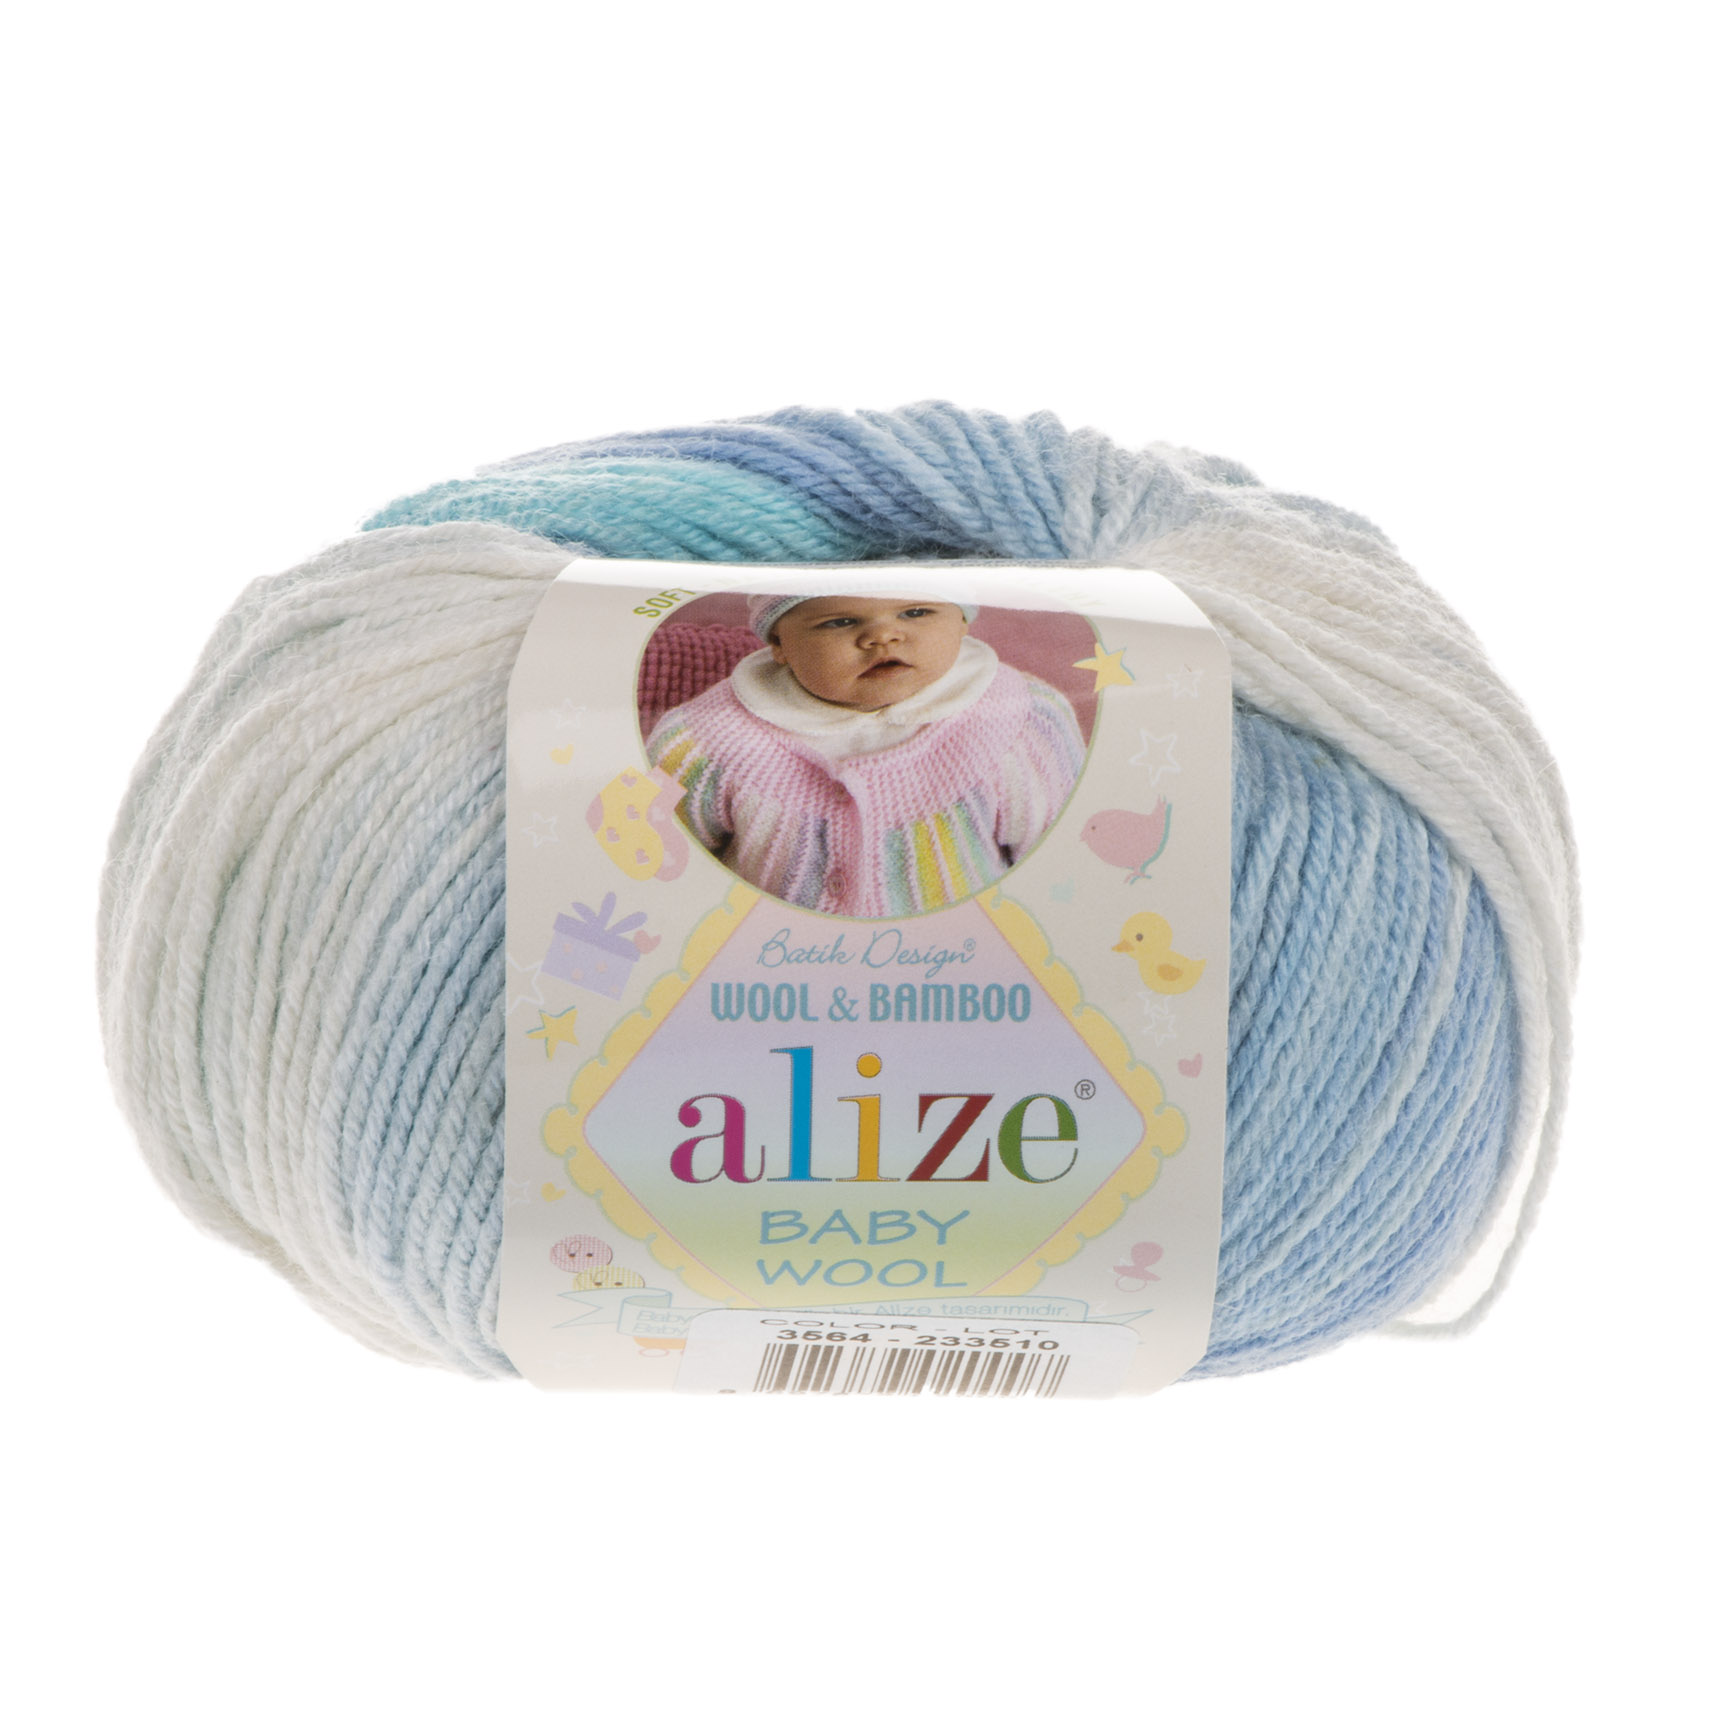 Baby Wool Batik 3564 бело-голубой